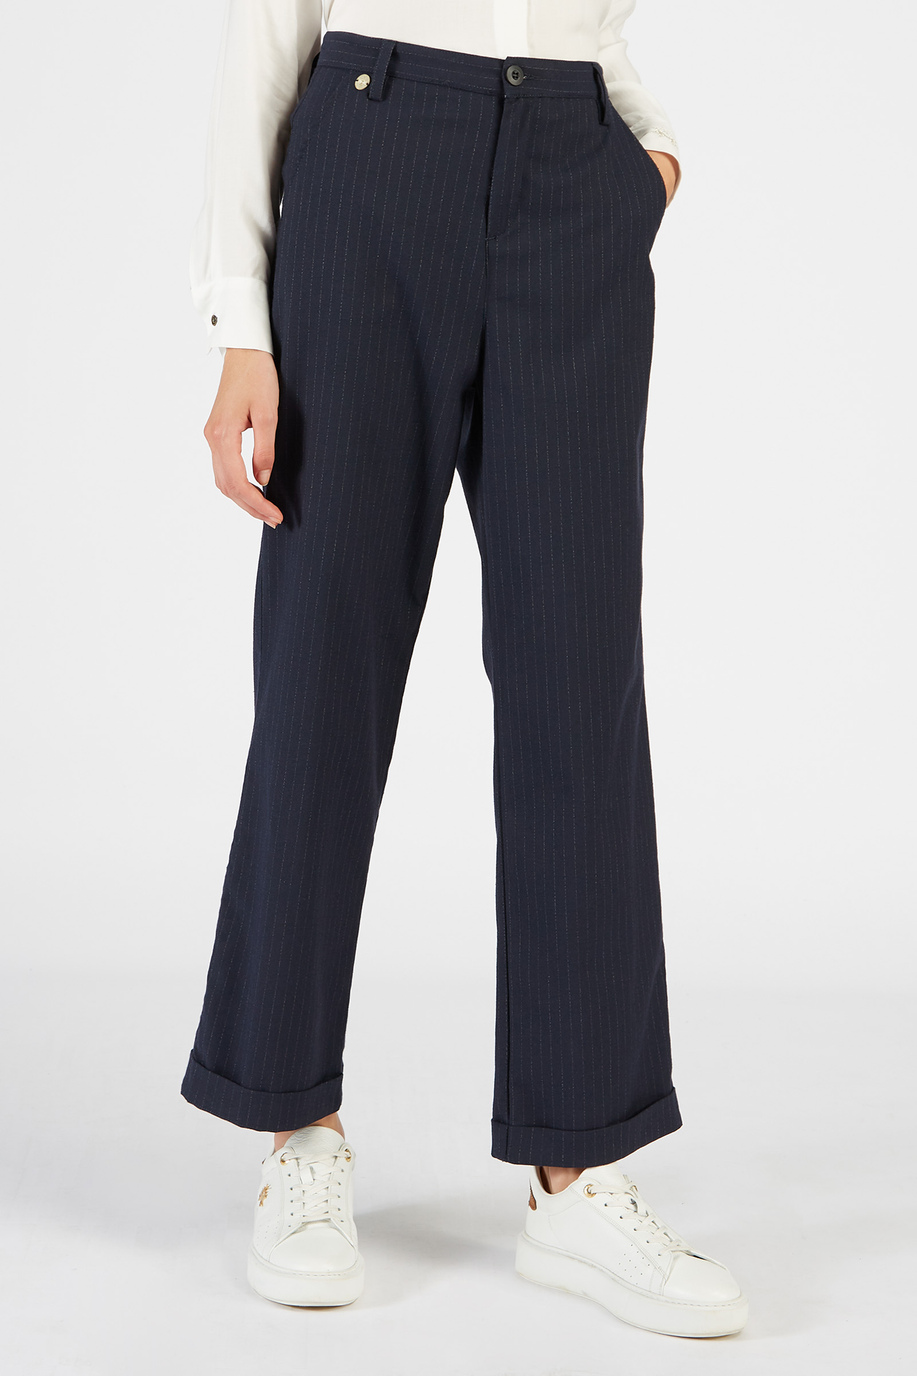 Pantalone da donna a vita alta con fondo largo - Business Look donna | La Martina - Official Online Shop